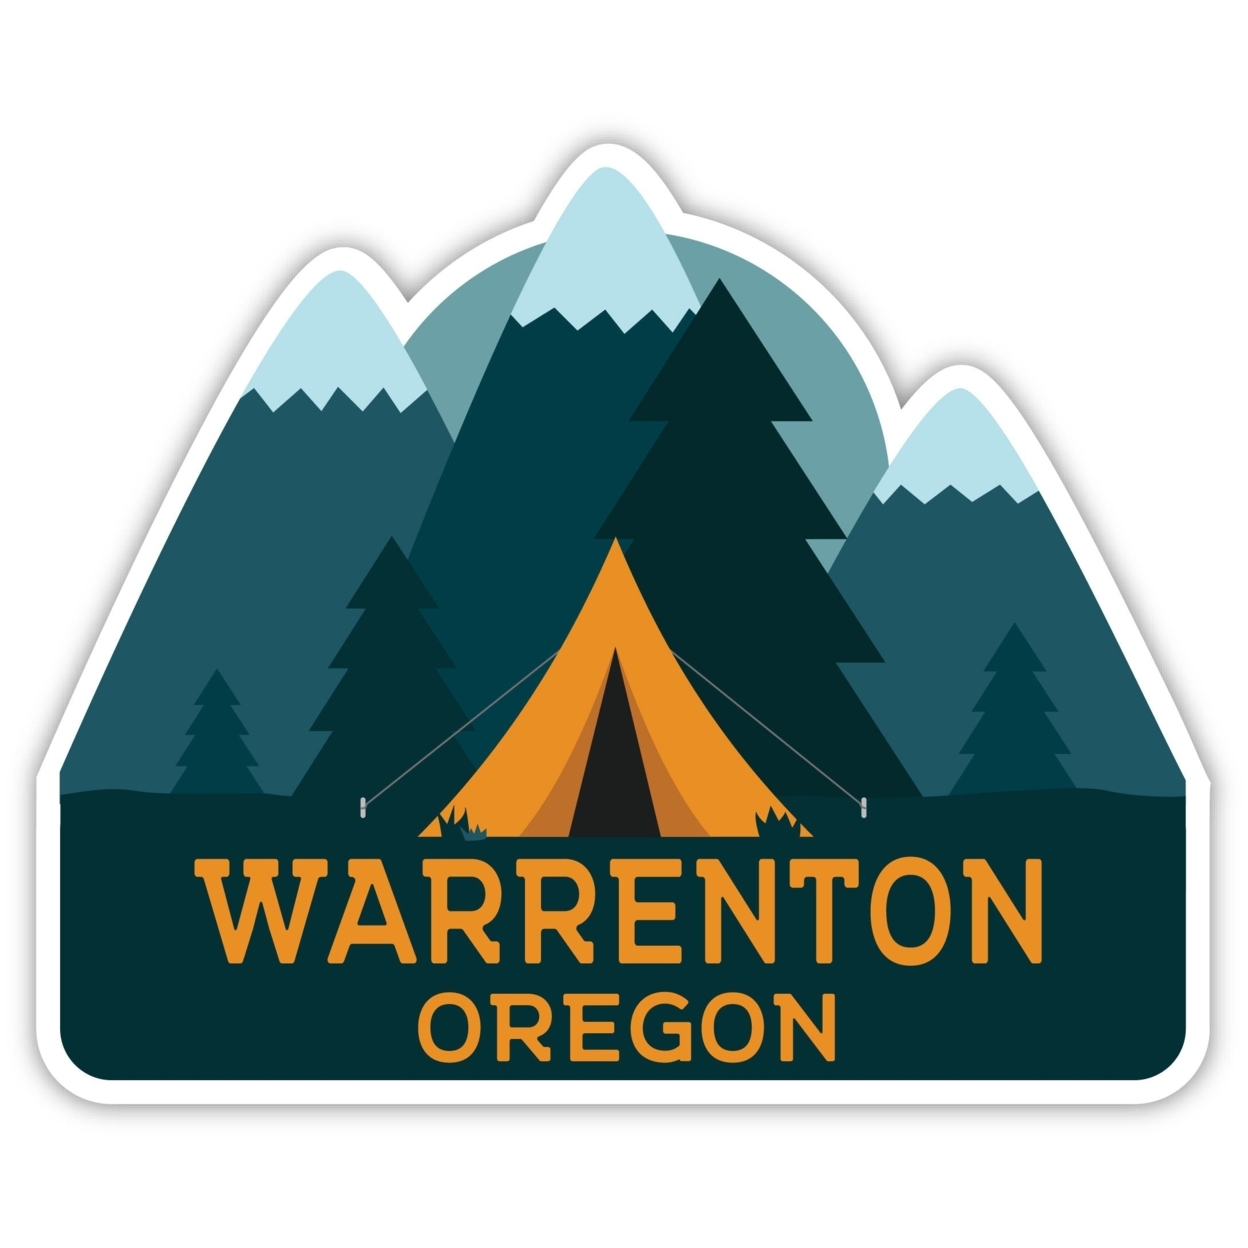 Warrenton Oregon Souvenir Decorative Stickers (Choose Theme And Size) - Single Unit, 2-Inch, Tent